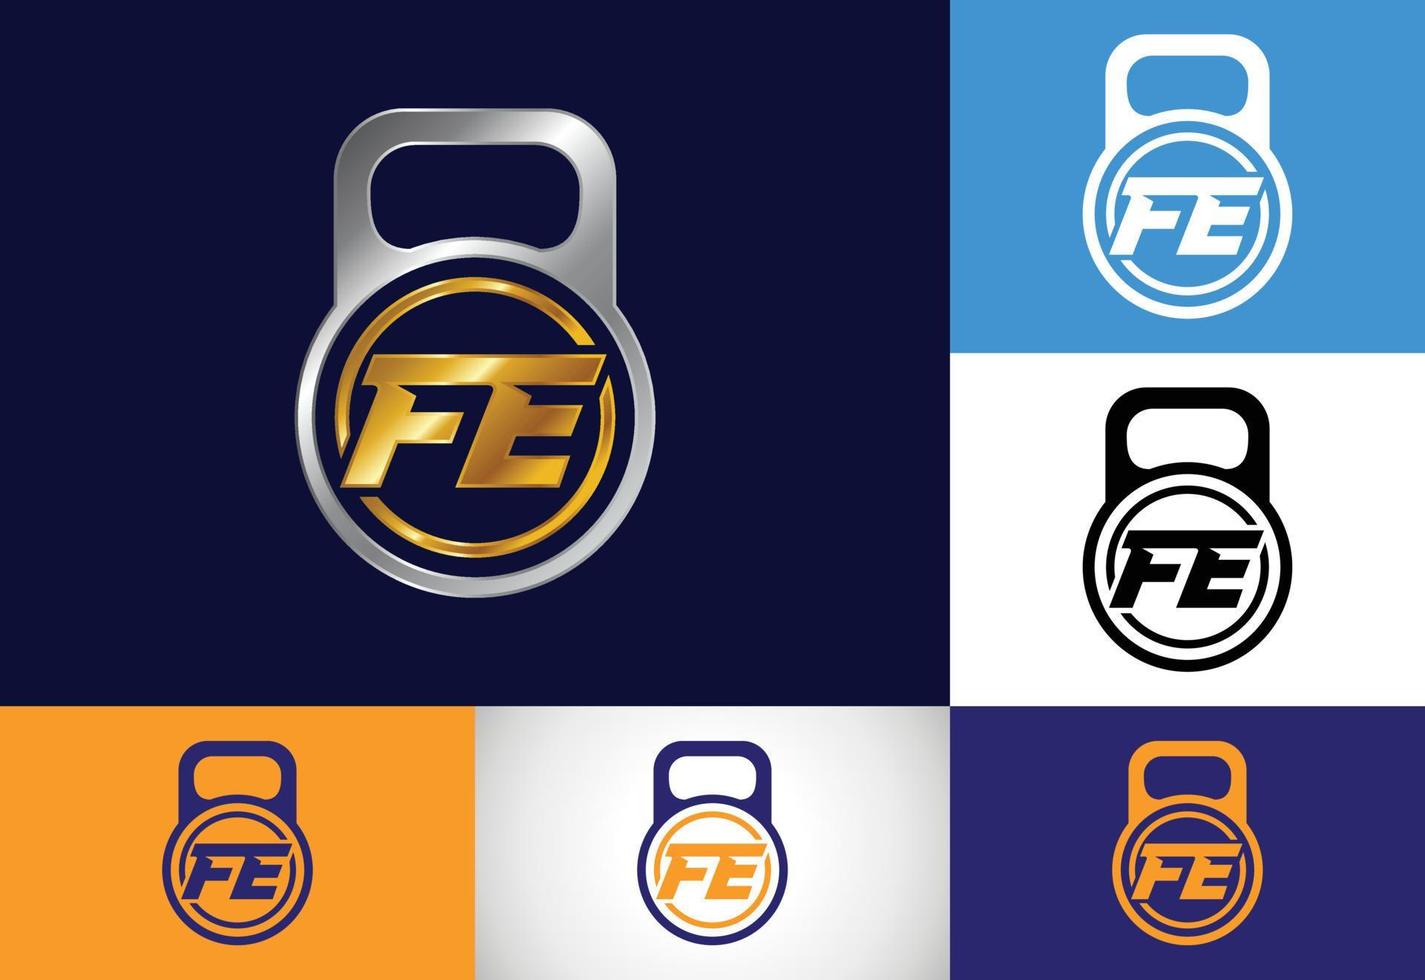 vector de diseño de logotipo de letra inicial fe. símbolo del alfabeto gráfico para la identidad empresarial corporativa